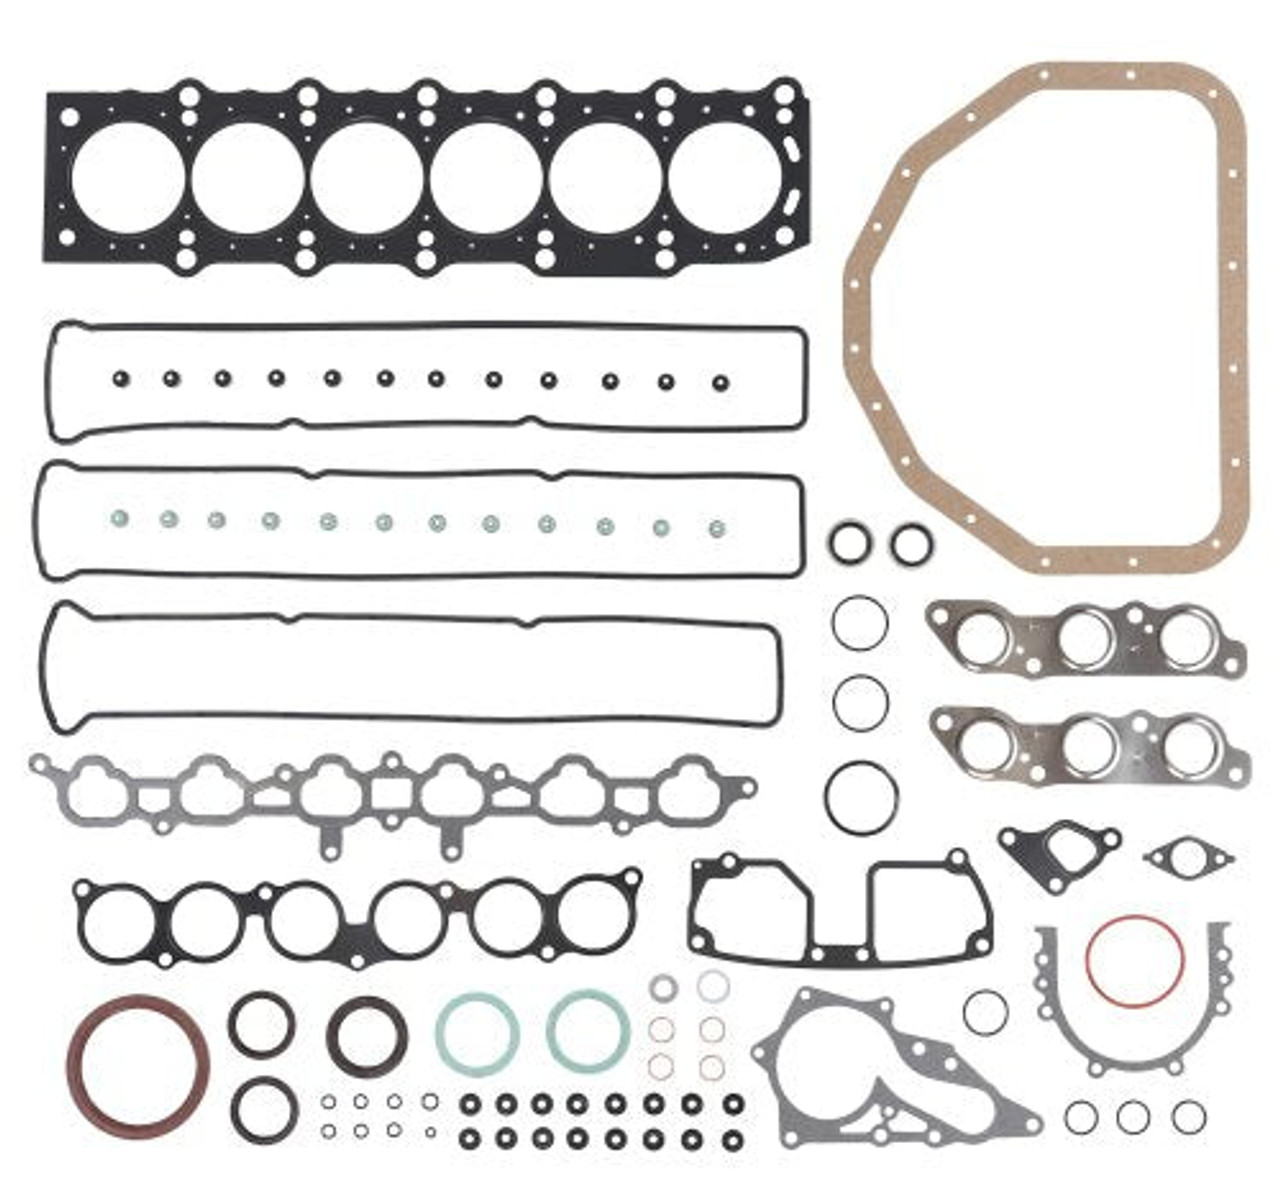 Full Gasket Set - 2000 Lexus SC300 3.0L Engine Parts # FGS9052ZE16